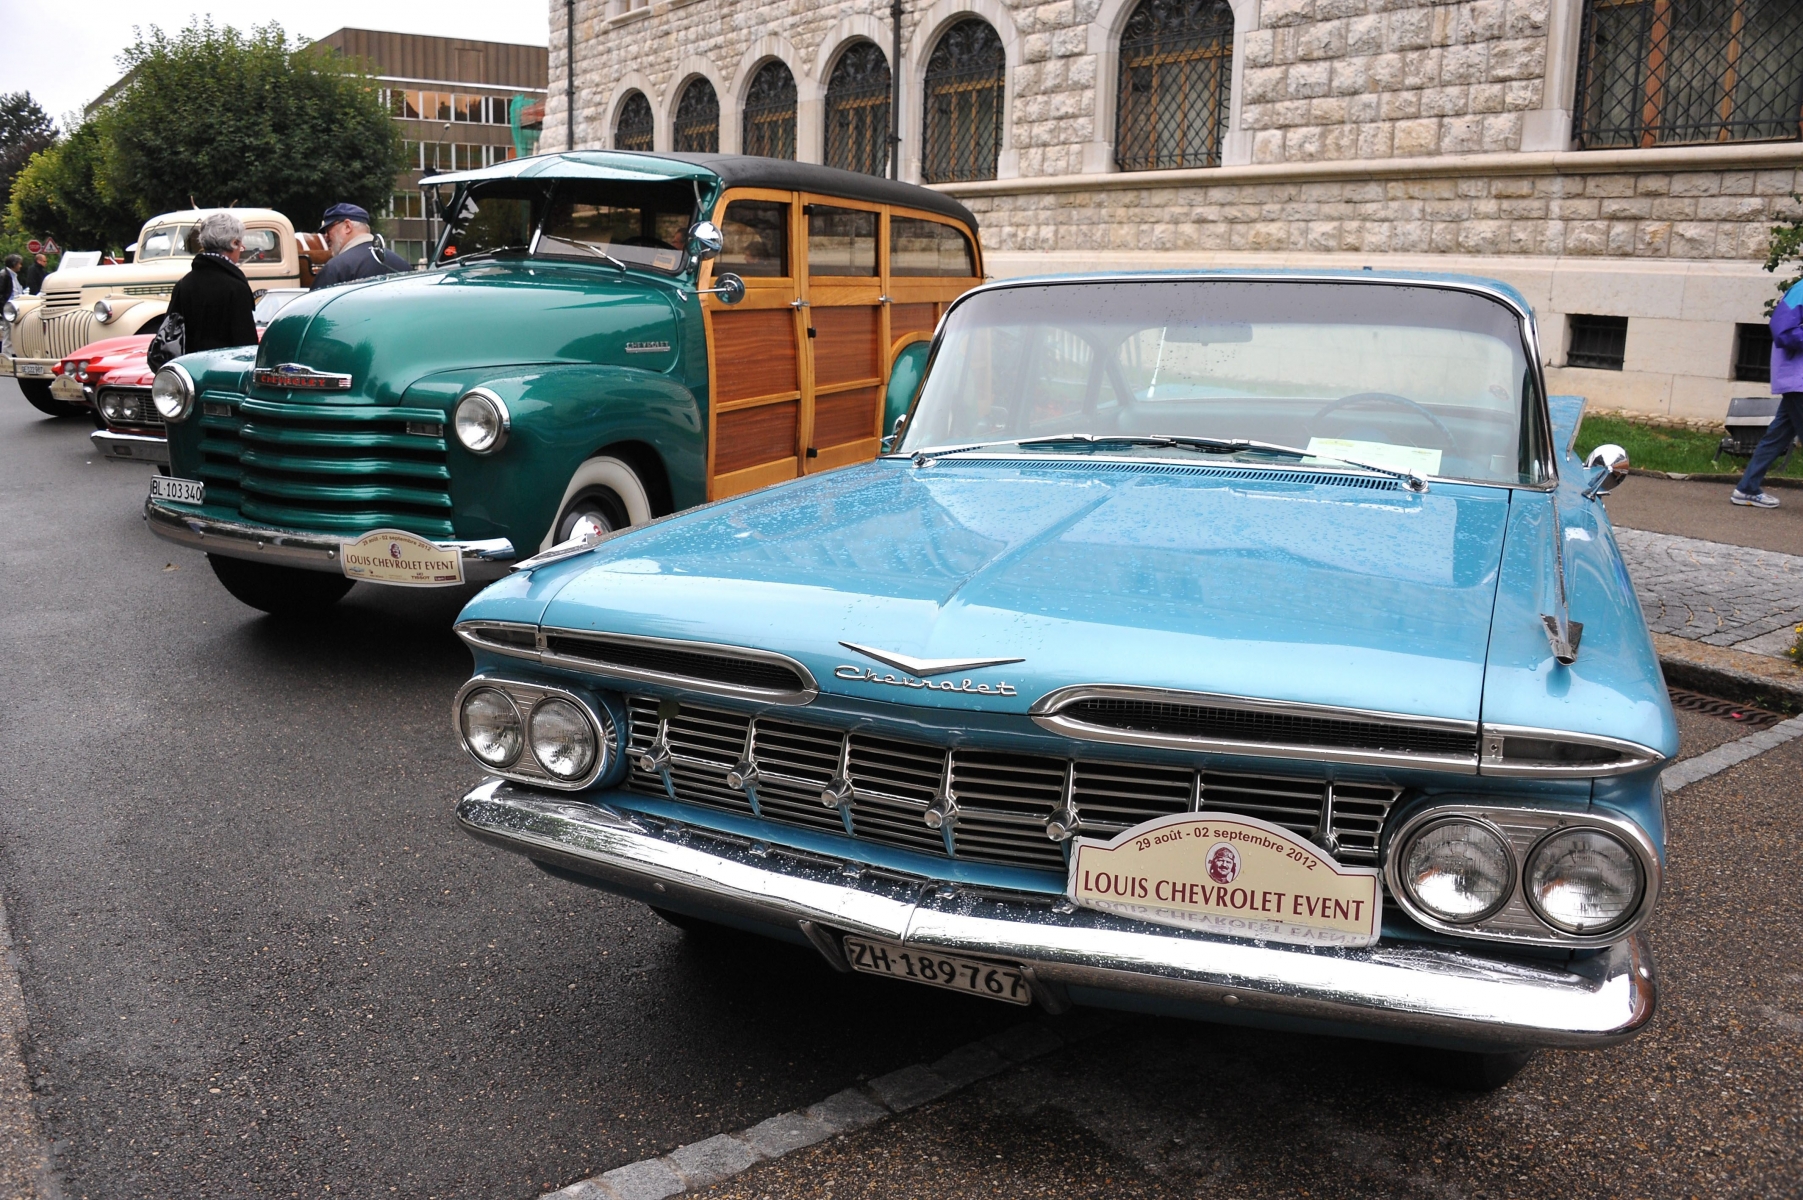 Chevrolet events: au premier plan une Chevrolet Impala de 1959 puis derriere un Woody de 1952 egalement Chevrolet



Le LOCLE 2 09 2012

Photo R Leuenberger LE LOCLE